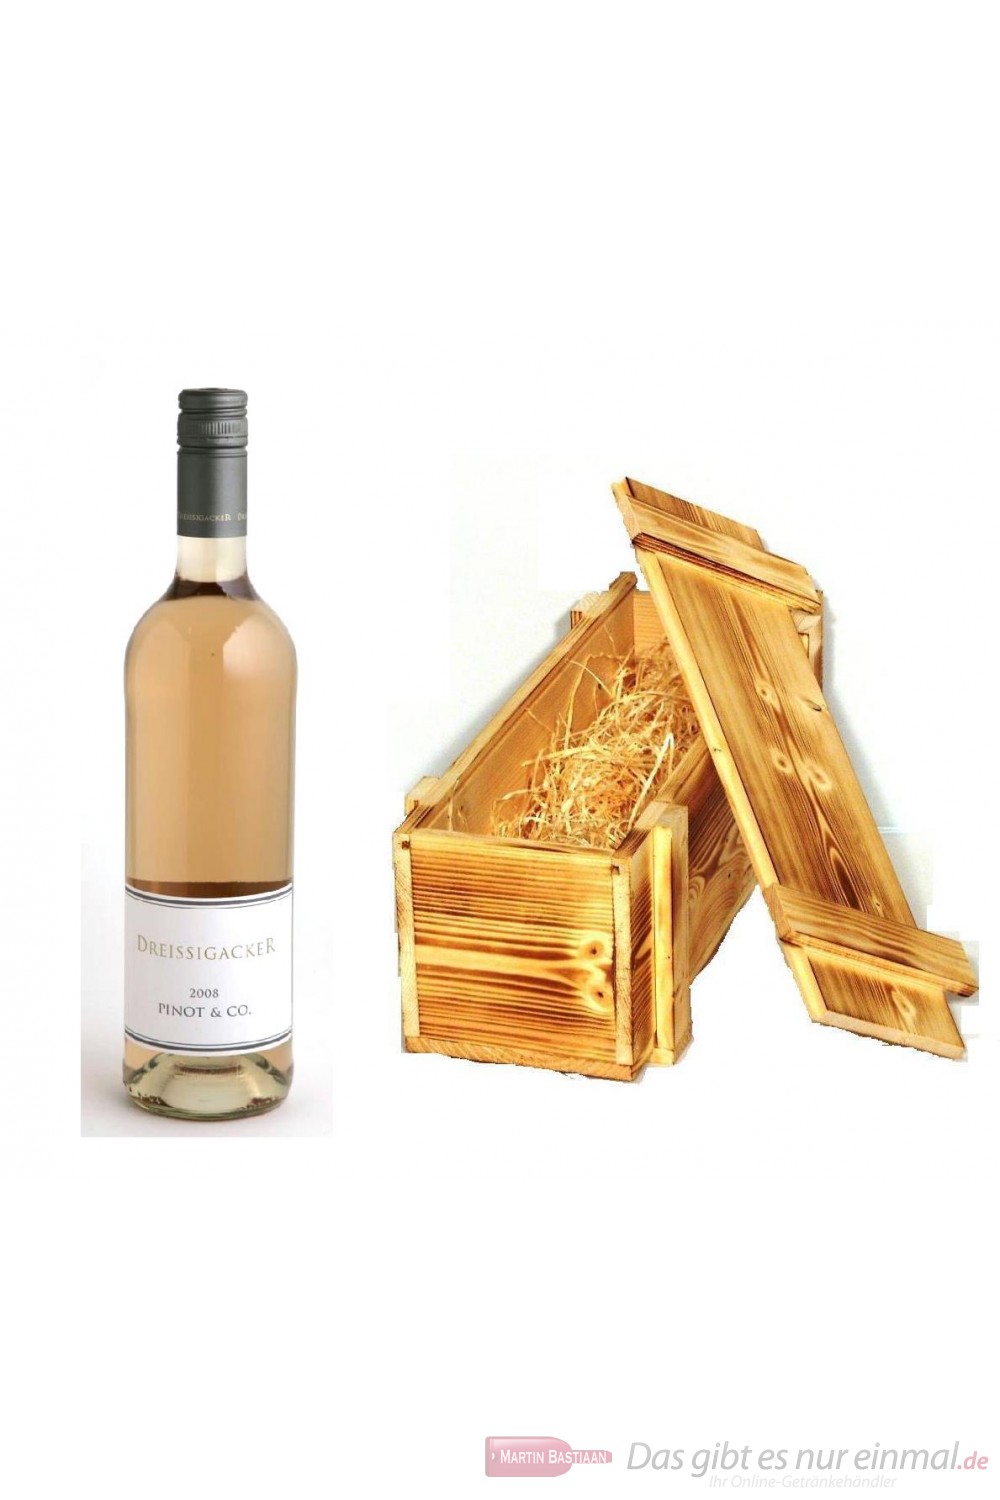 Dreissigacker Pinot und Co Qba Rosé Cuvèe trocken 2010 12,5% 0,75l Flasche in Holzkiste geflammt